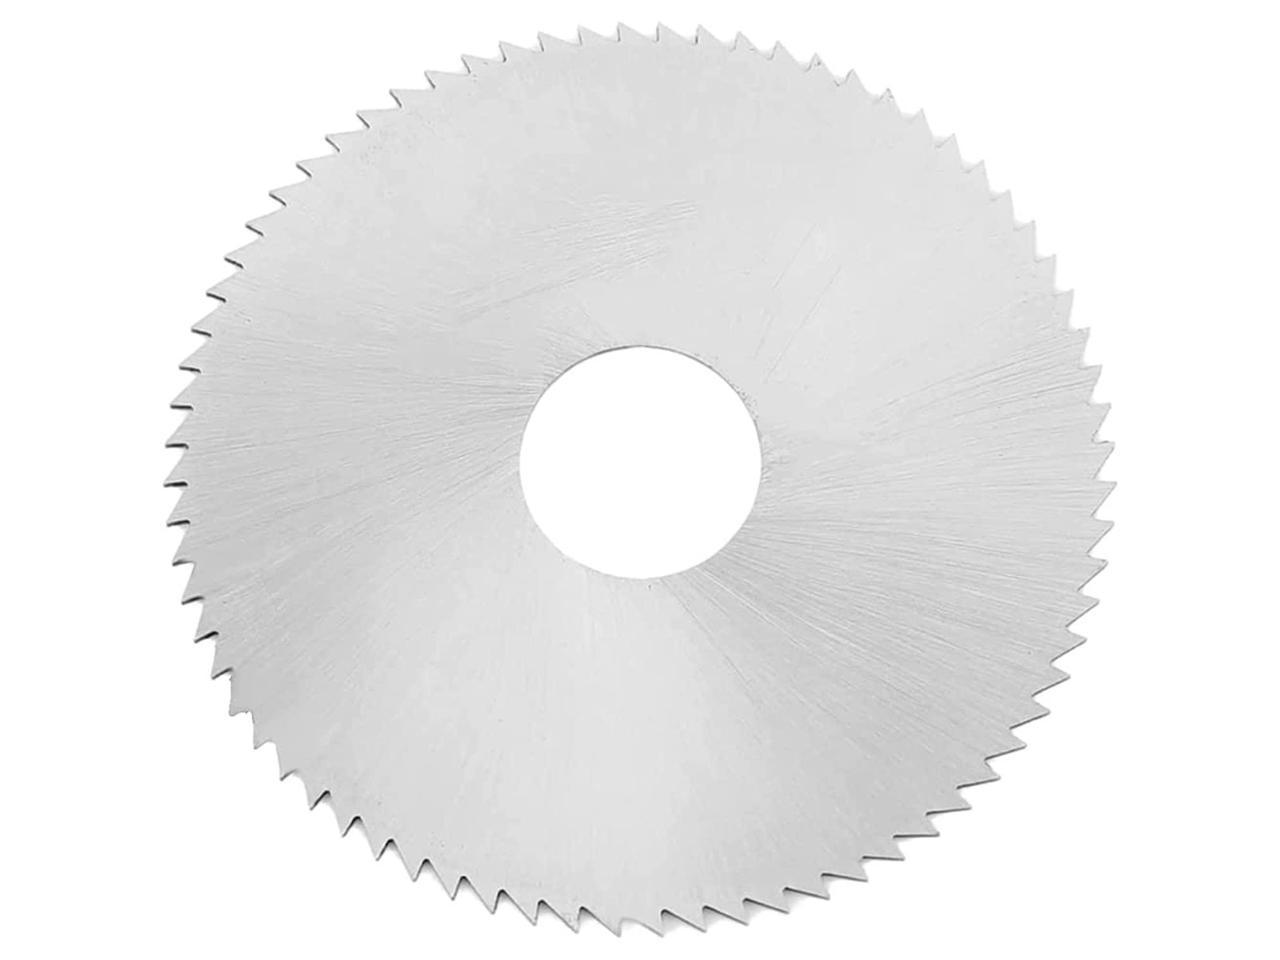 2 Pcs 3-3/8 Inch Circular Saw Blade for Craftsman Bolt-On Trim Saw Carbide HSS 